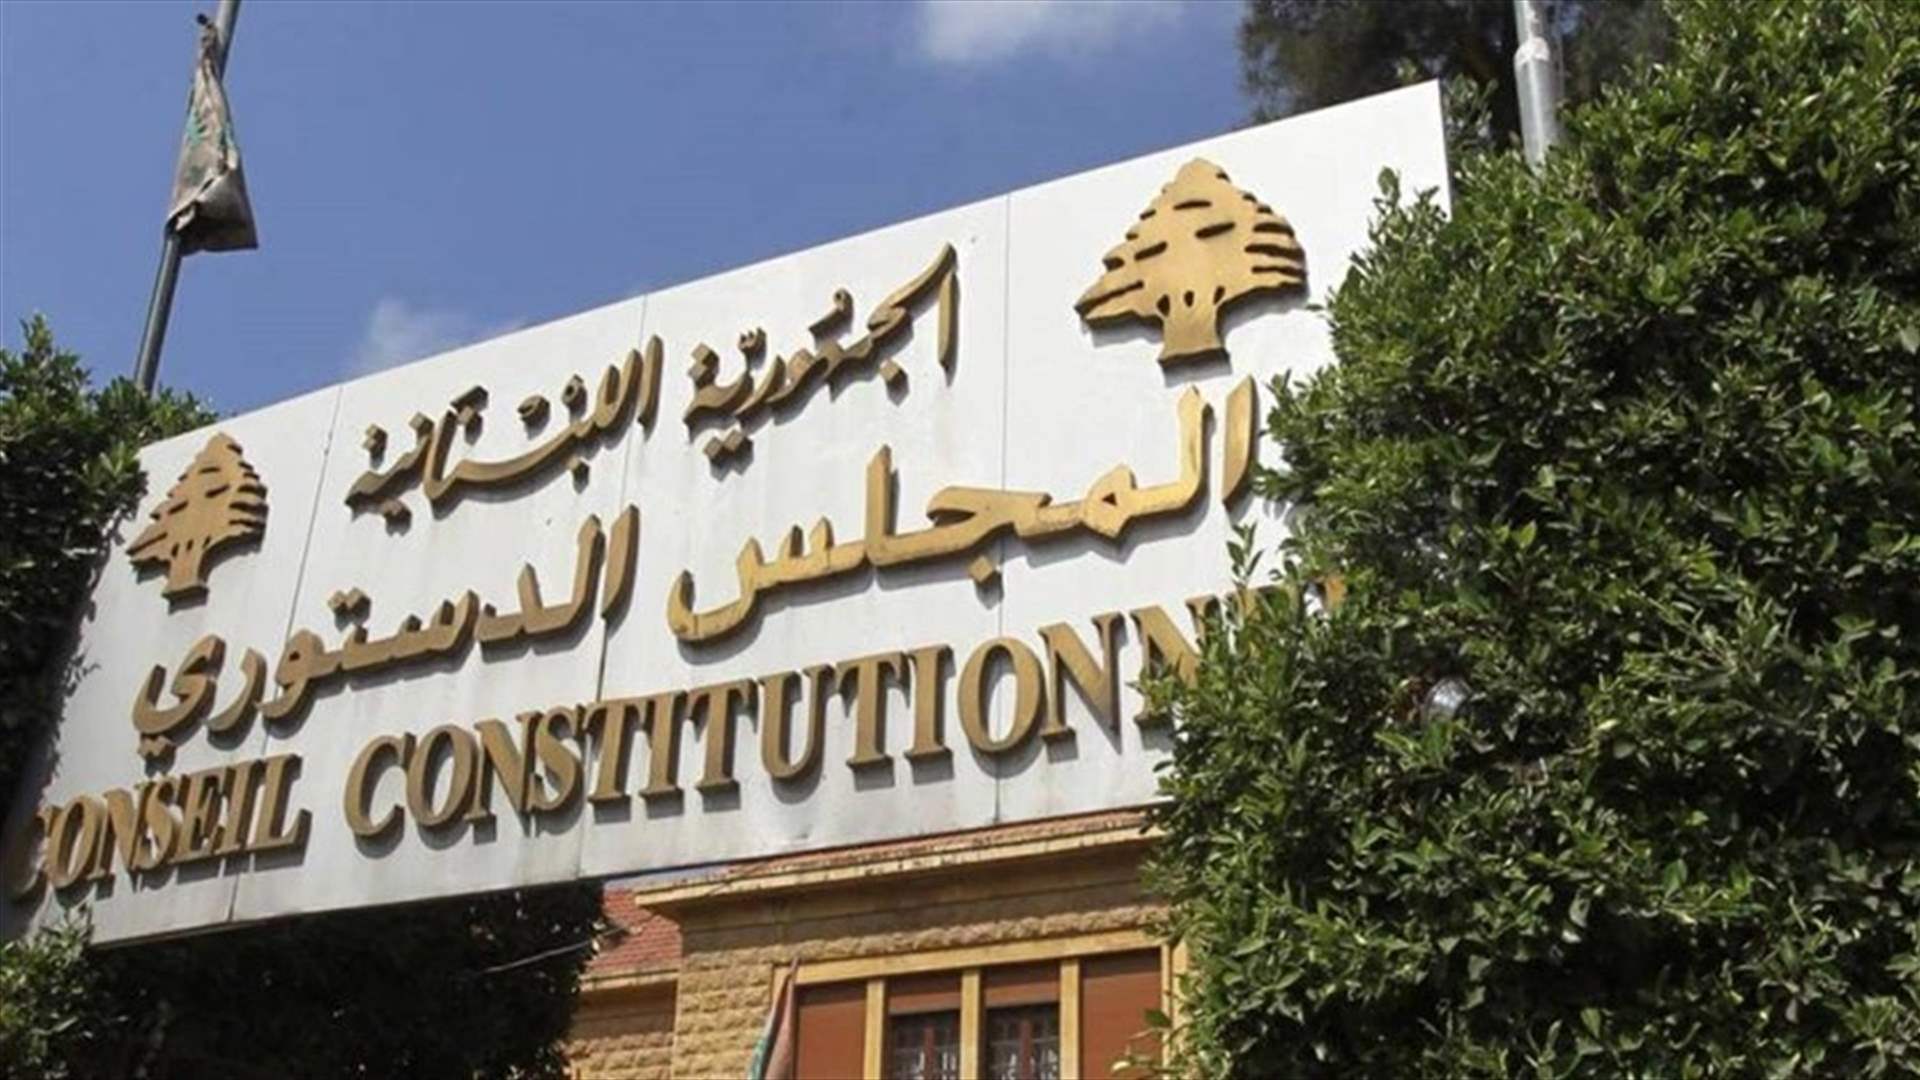 التمديد للمجالس البلدية سيكون عرضة للطعن أمام المجلس الدستوري (الشرق الأوسط)